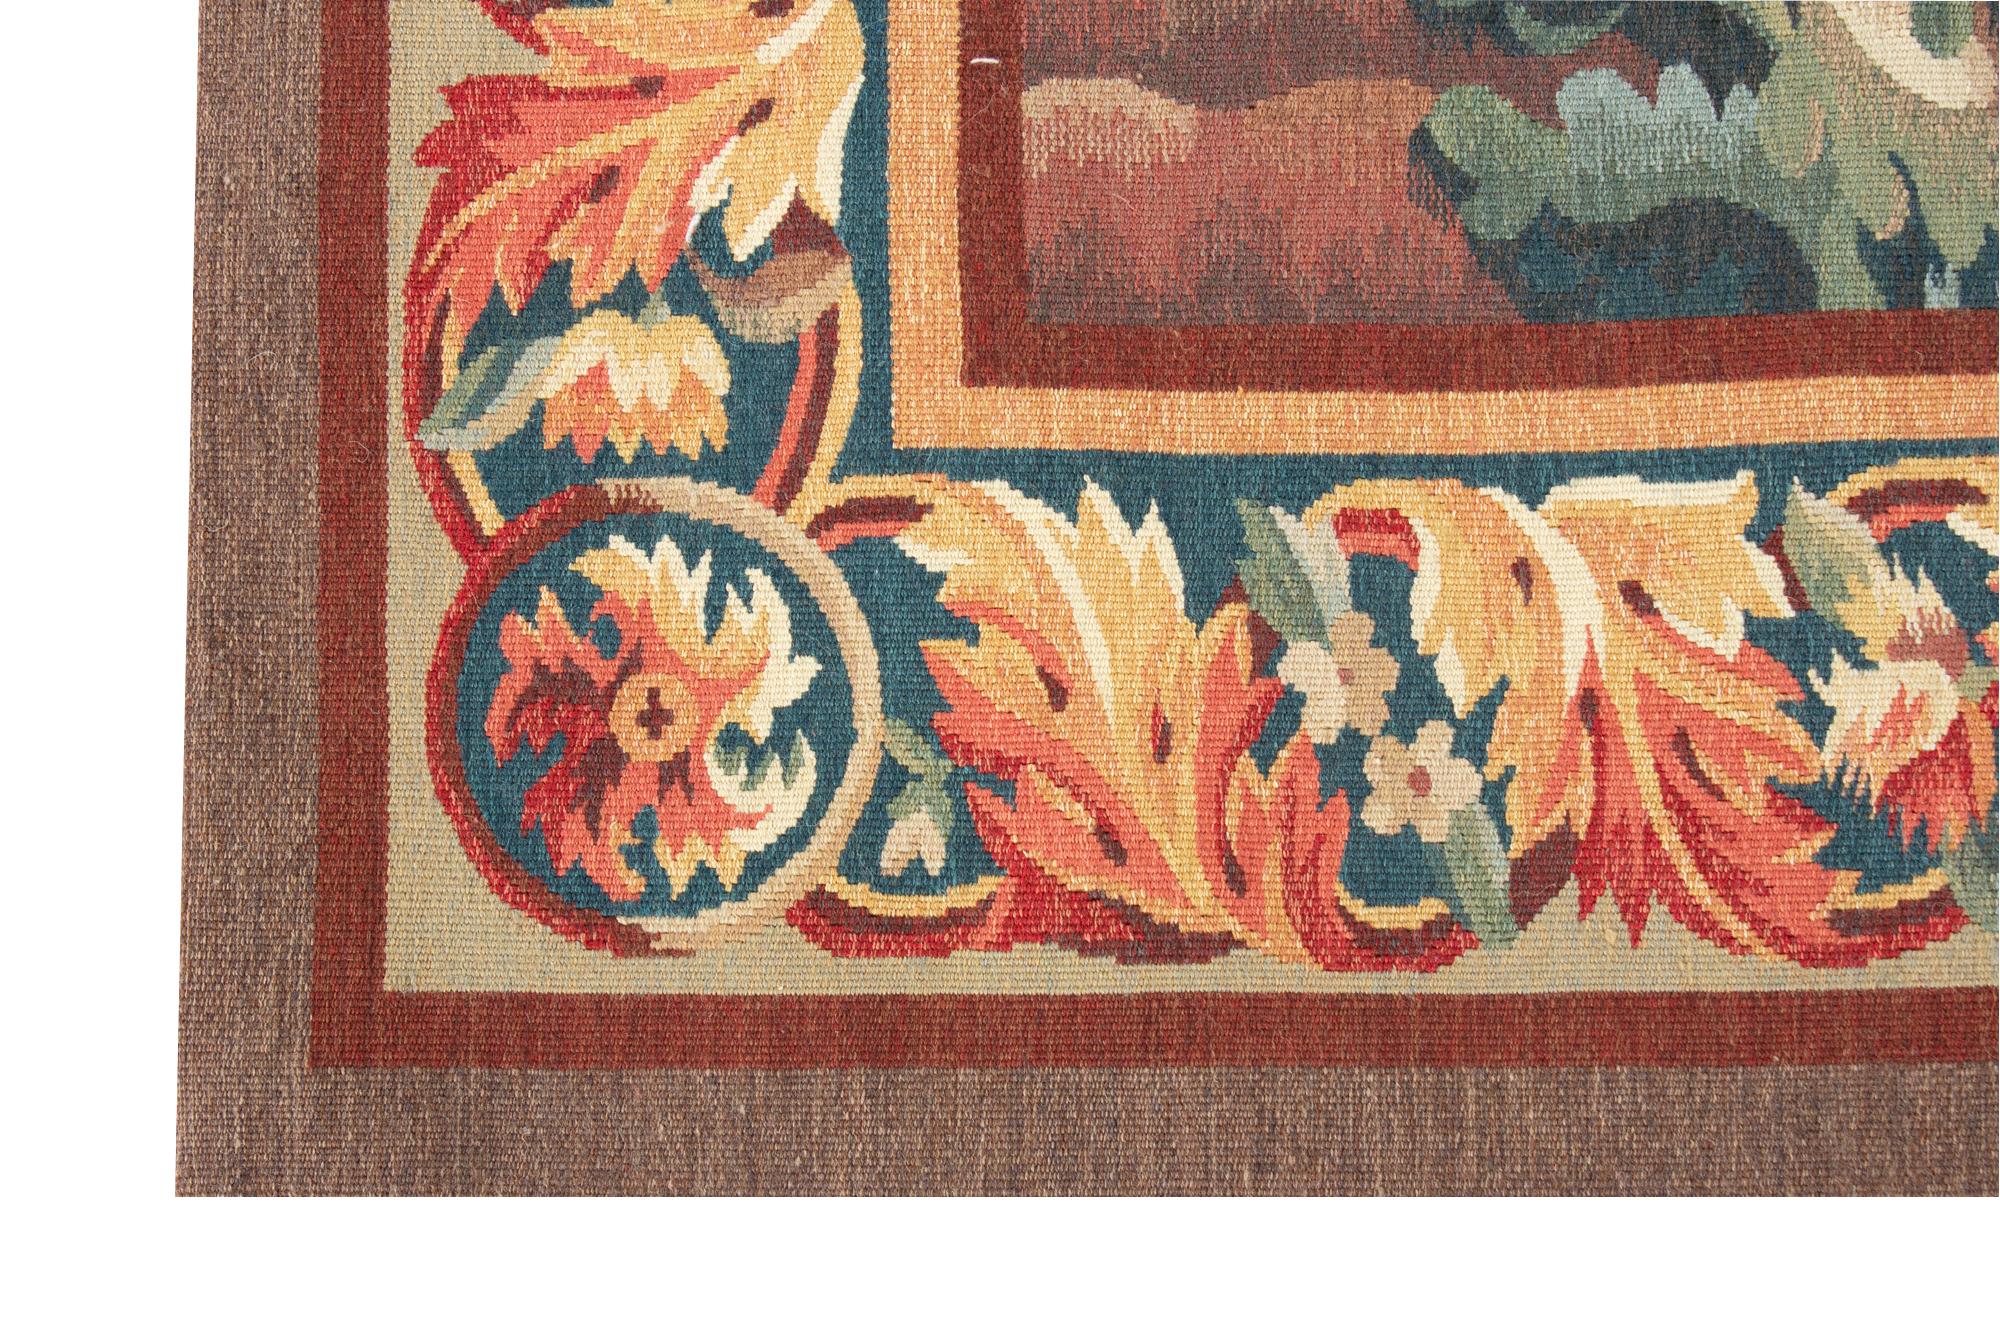 Ein anmutiger Wandteppich im Stil derjenigen, die im 18. Jahrhundert in Aubusson gewebt wurden, einer der wichtigsten Tapisserie-Städte in Frankreich. In dieser Zeit waren Landschaften mit Bäumen, Vögeln und Flüssen sehr beliebt, die oft von